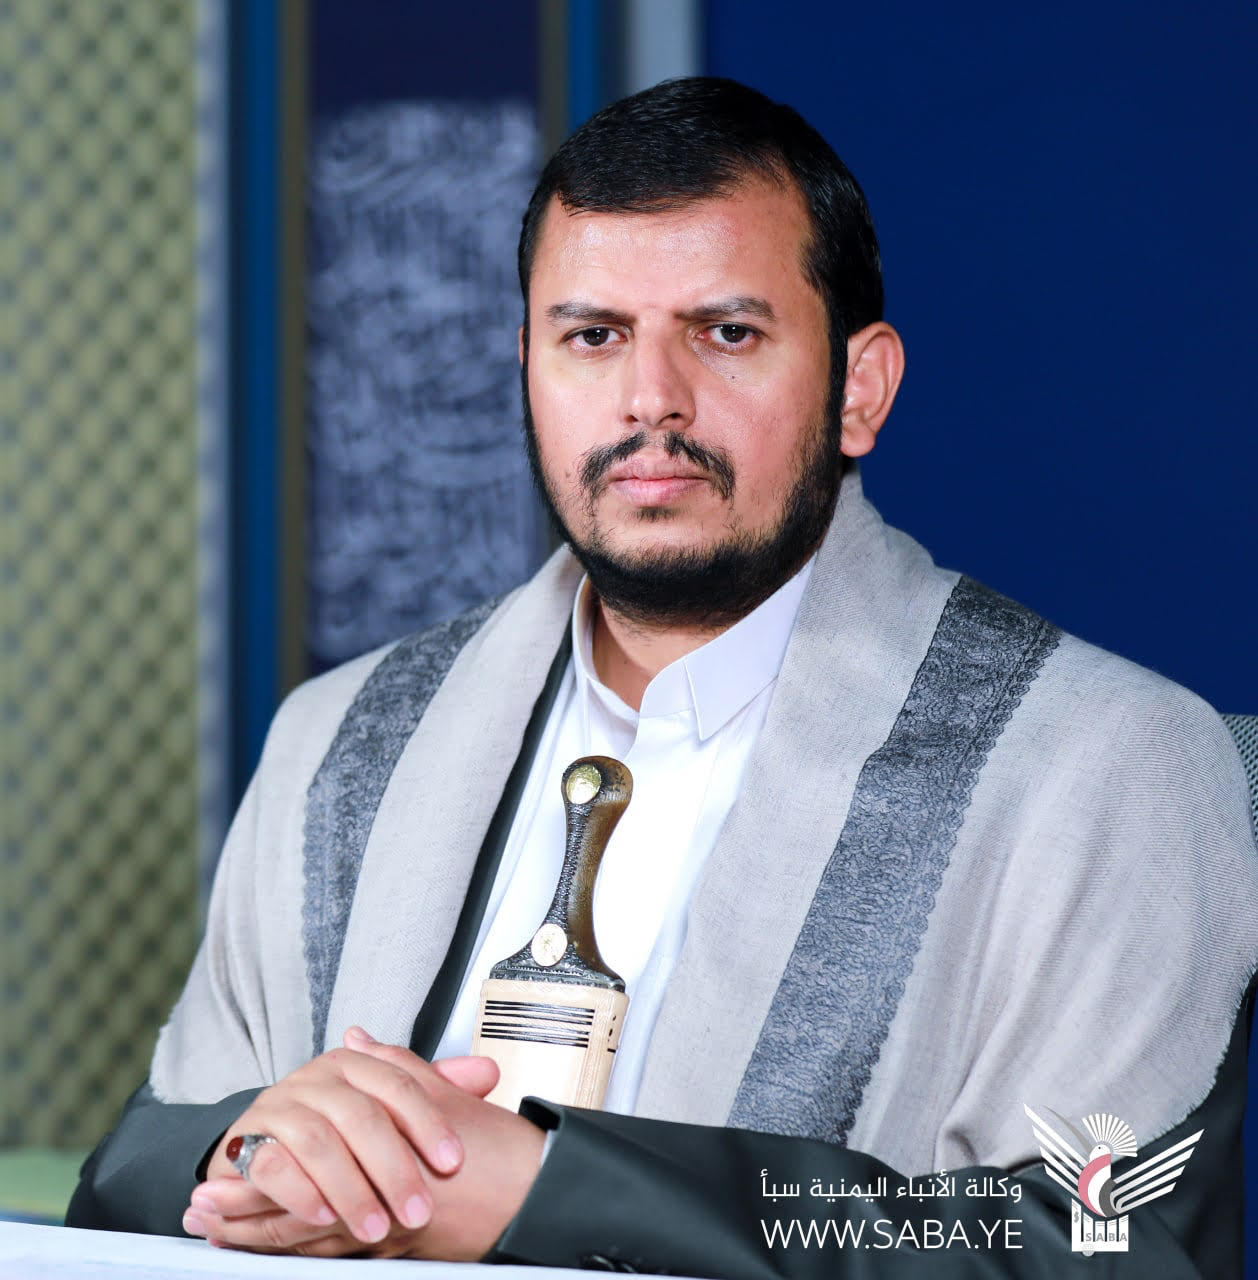 قائد الثورة: احتفال الشعب اليمني بيوم الولاية يأتي انطلاقاً من موروثه الإيماني